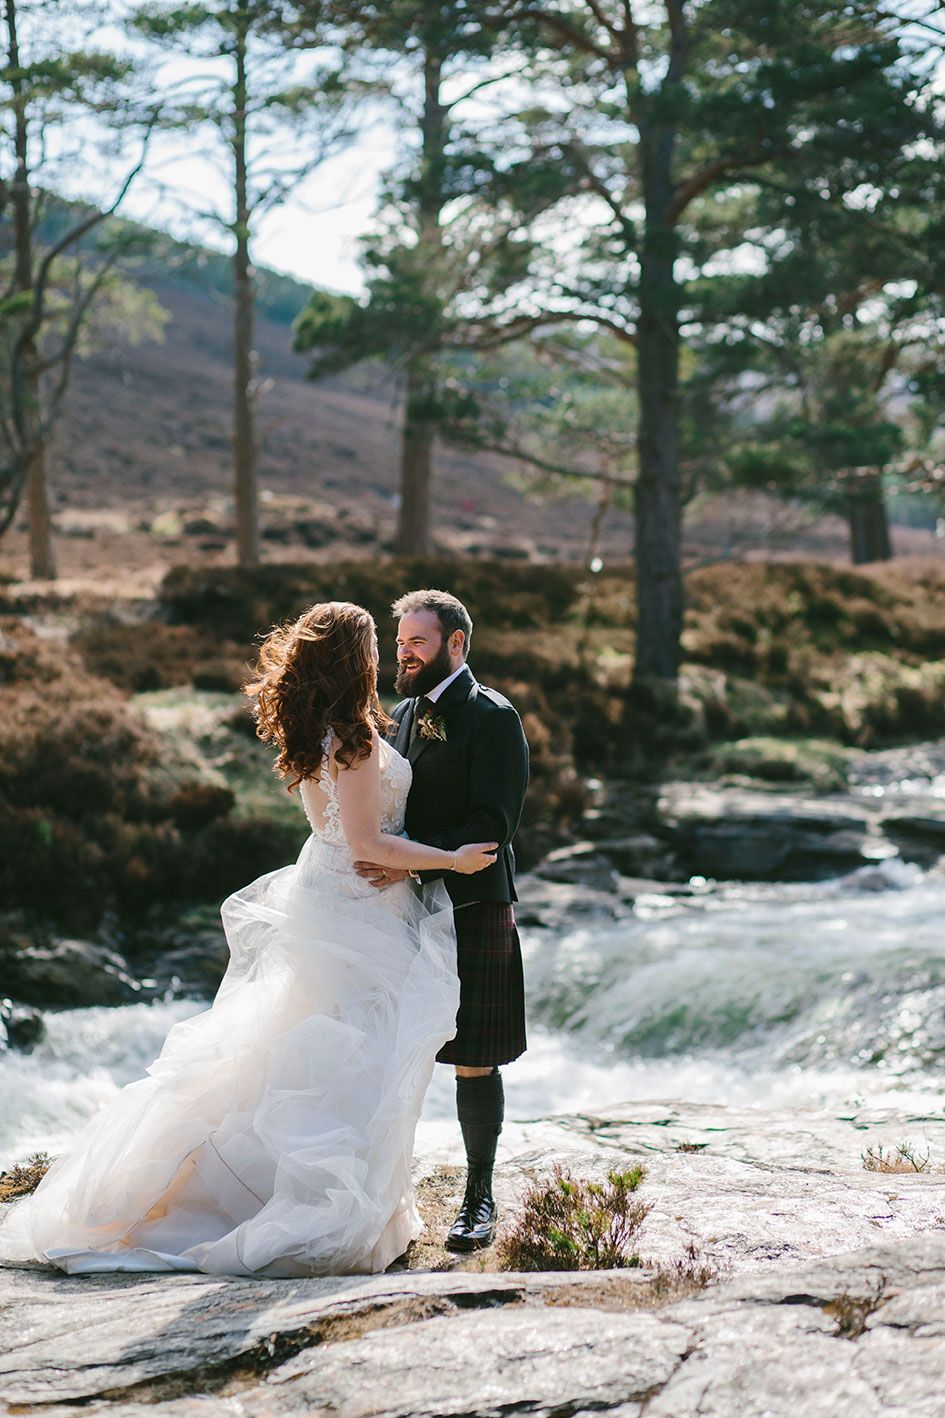 Mar Lodge Scottish Wedding photography